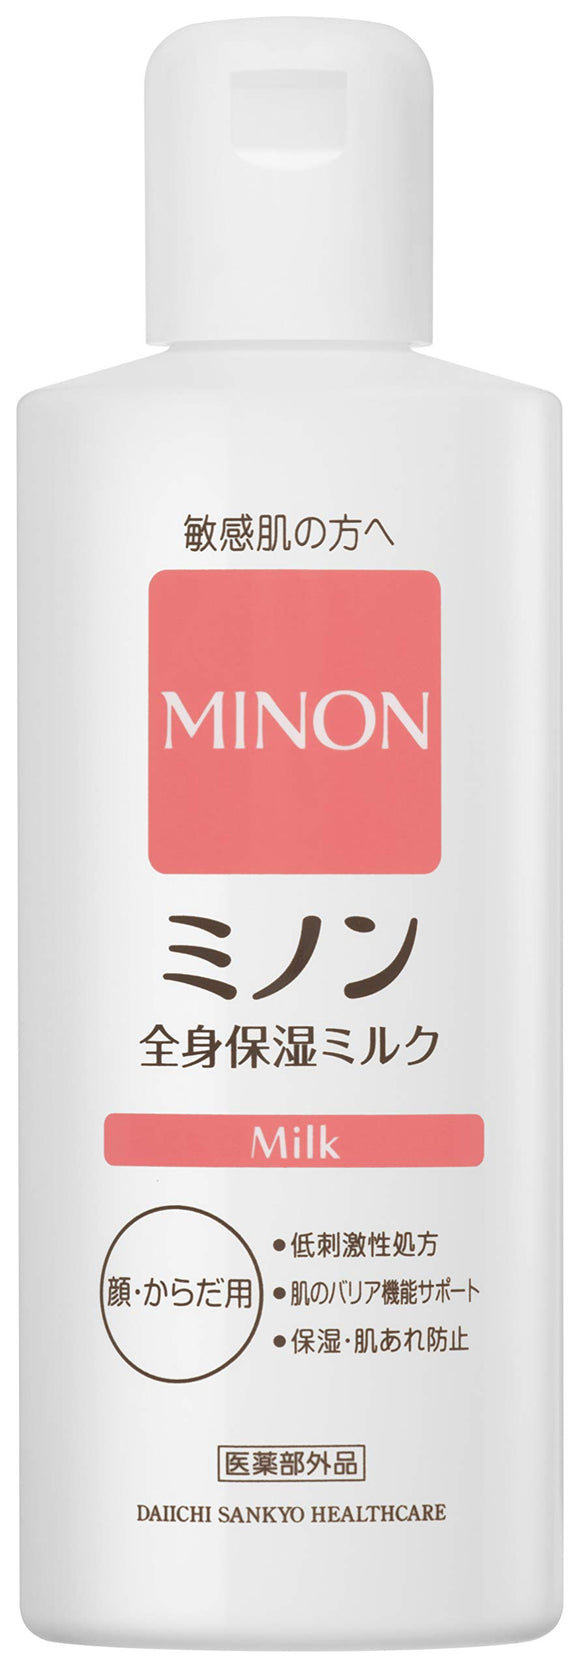 MINON Minon whole body moisturizing milk liquid 200ml